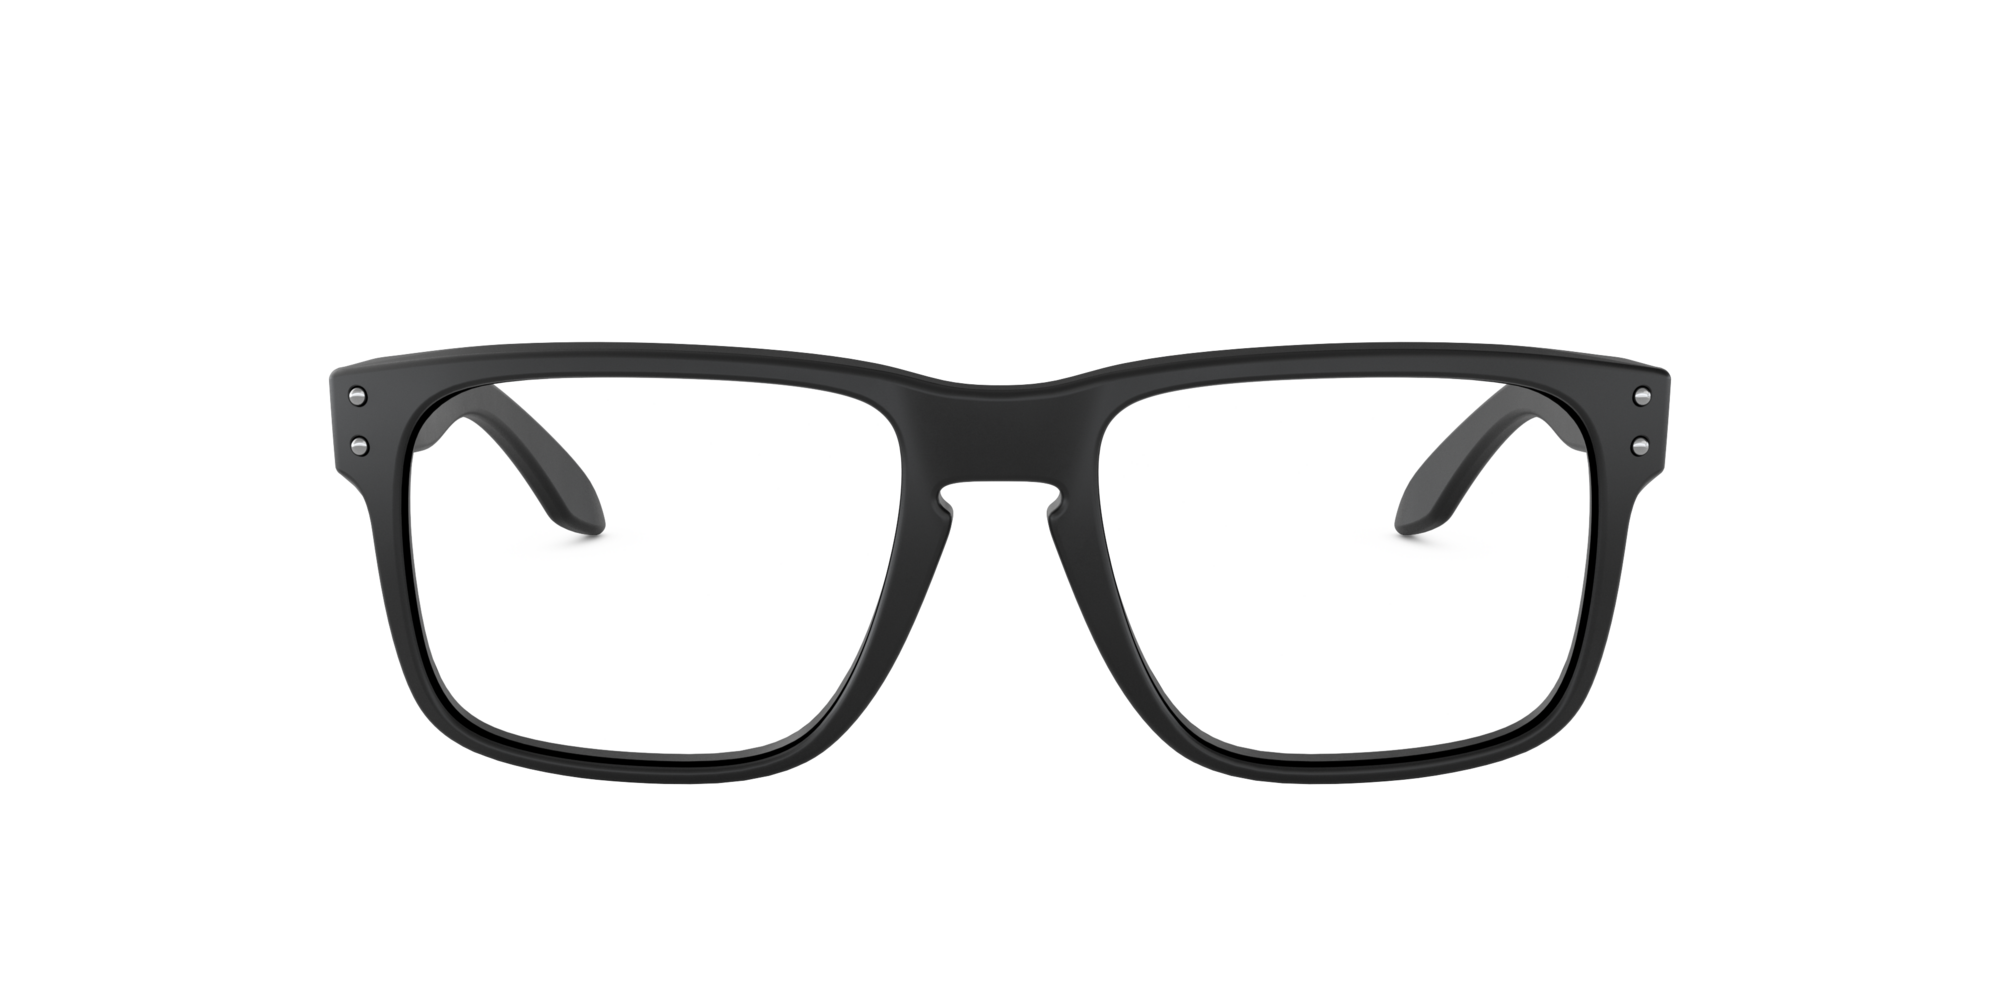 Das Bild zeigt die Korrektionsbrille OX8156 815601 von der Marke Oakley  in schwarz satiniert.